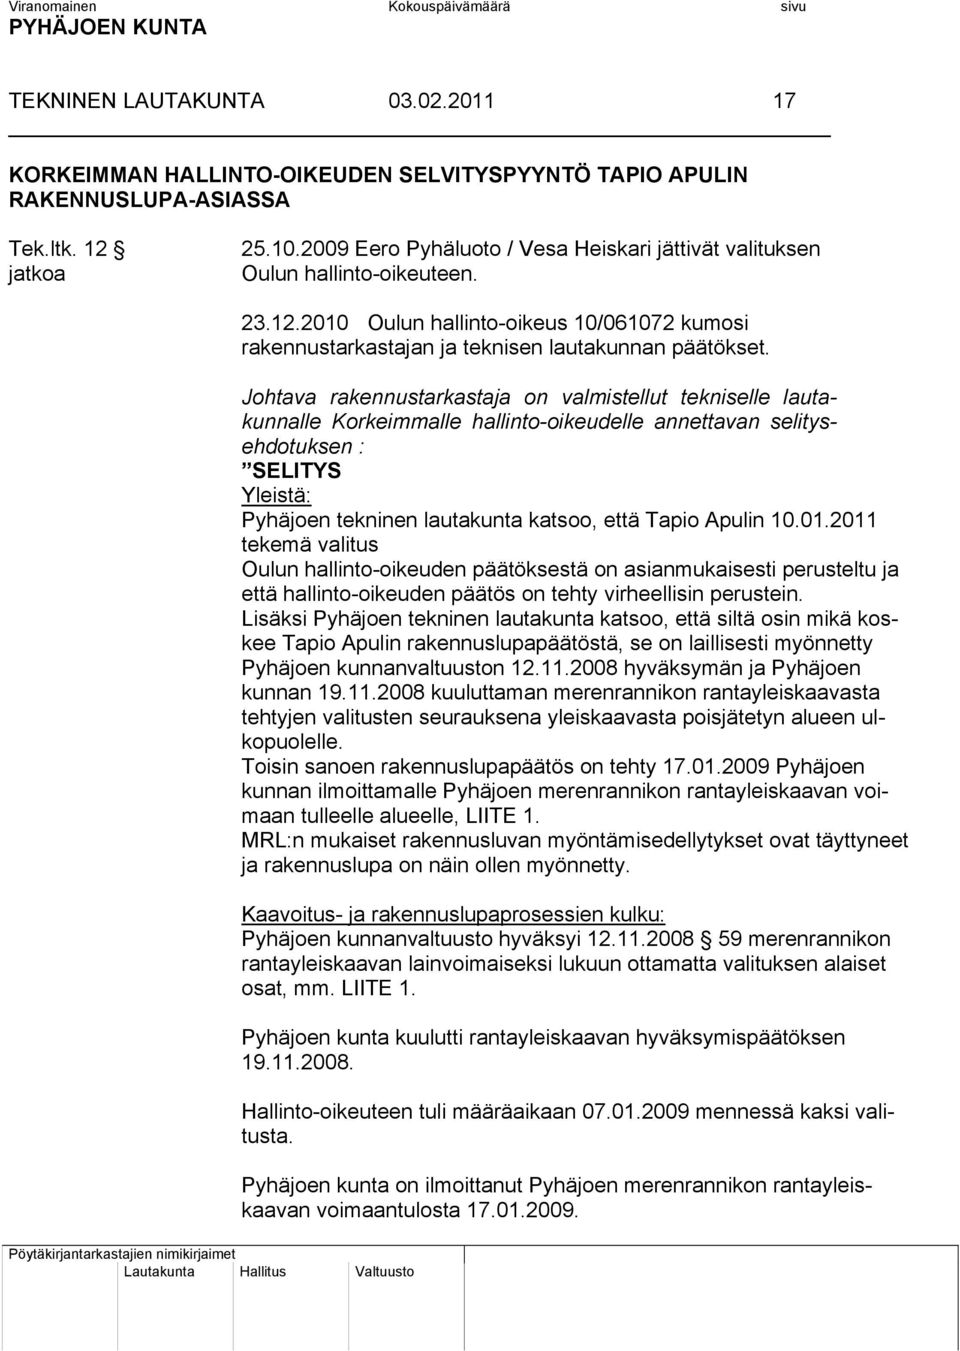 Apulin 10.01.2011 tekemä valitus Oulun hallinto-oikeuden päätöksestä on asianmukaisesti perusteltu ja että hallinto-oikeuden päätös on tehty virheellisin perustein.